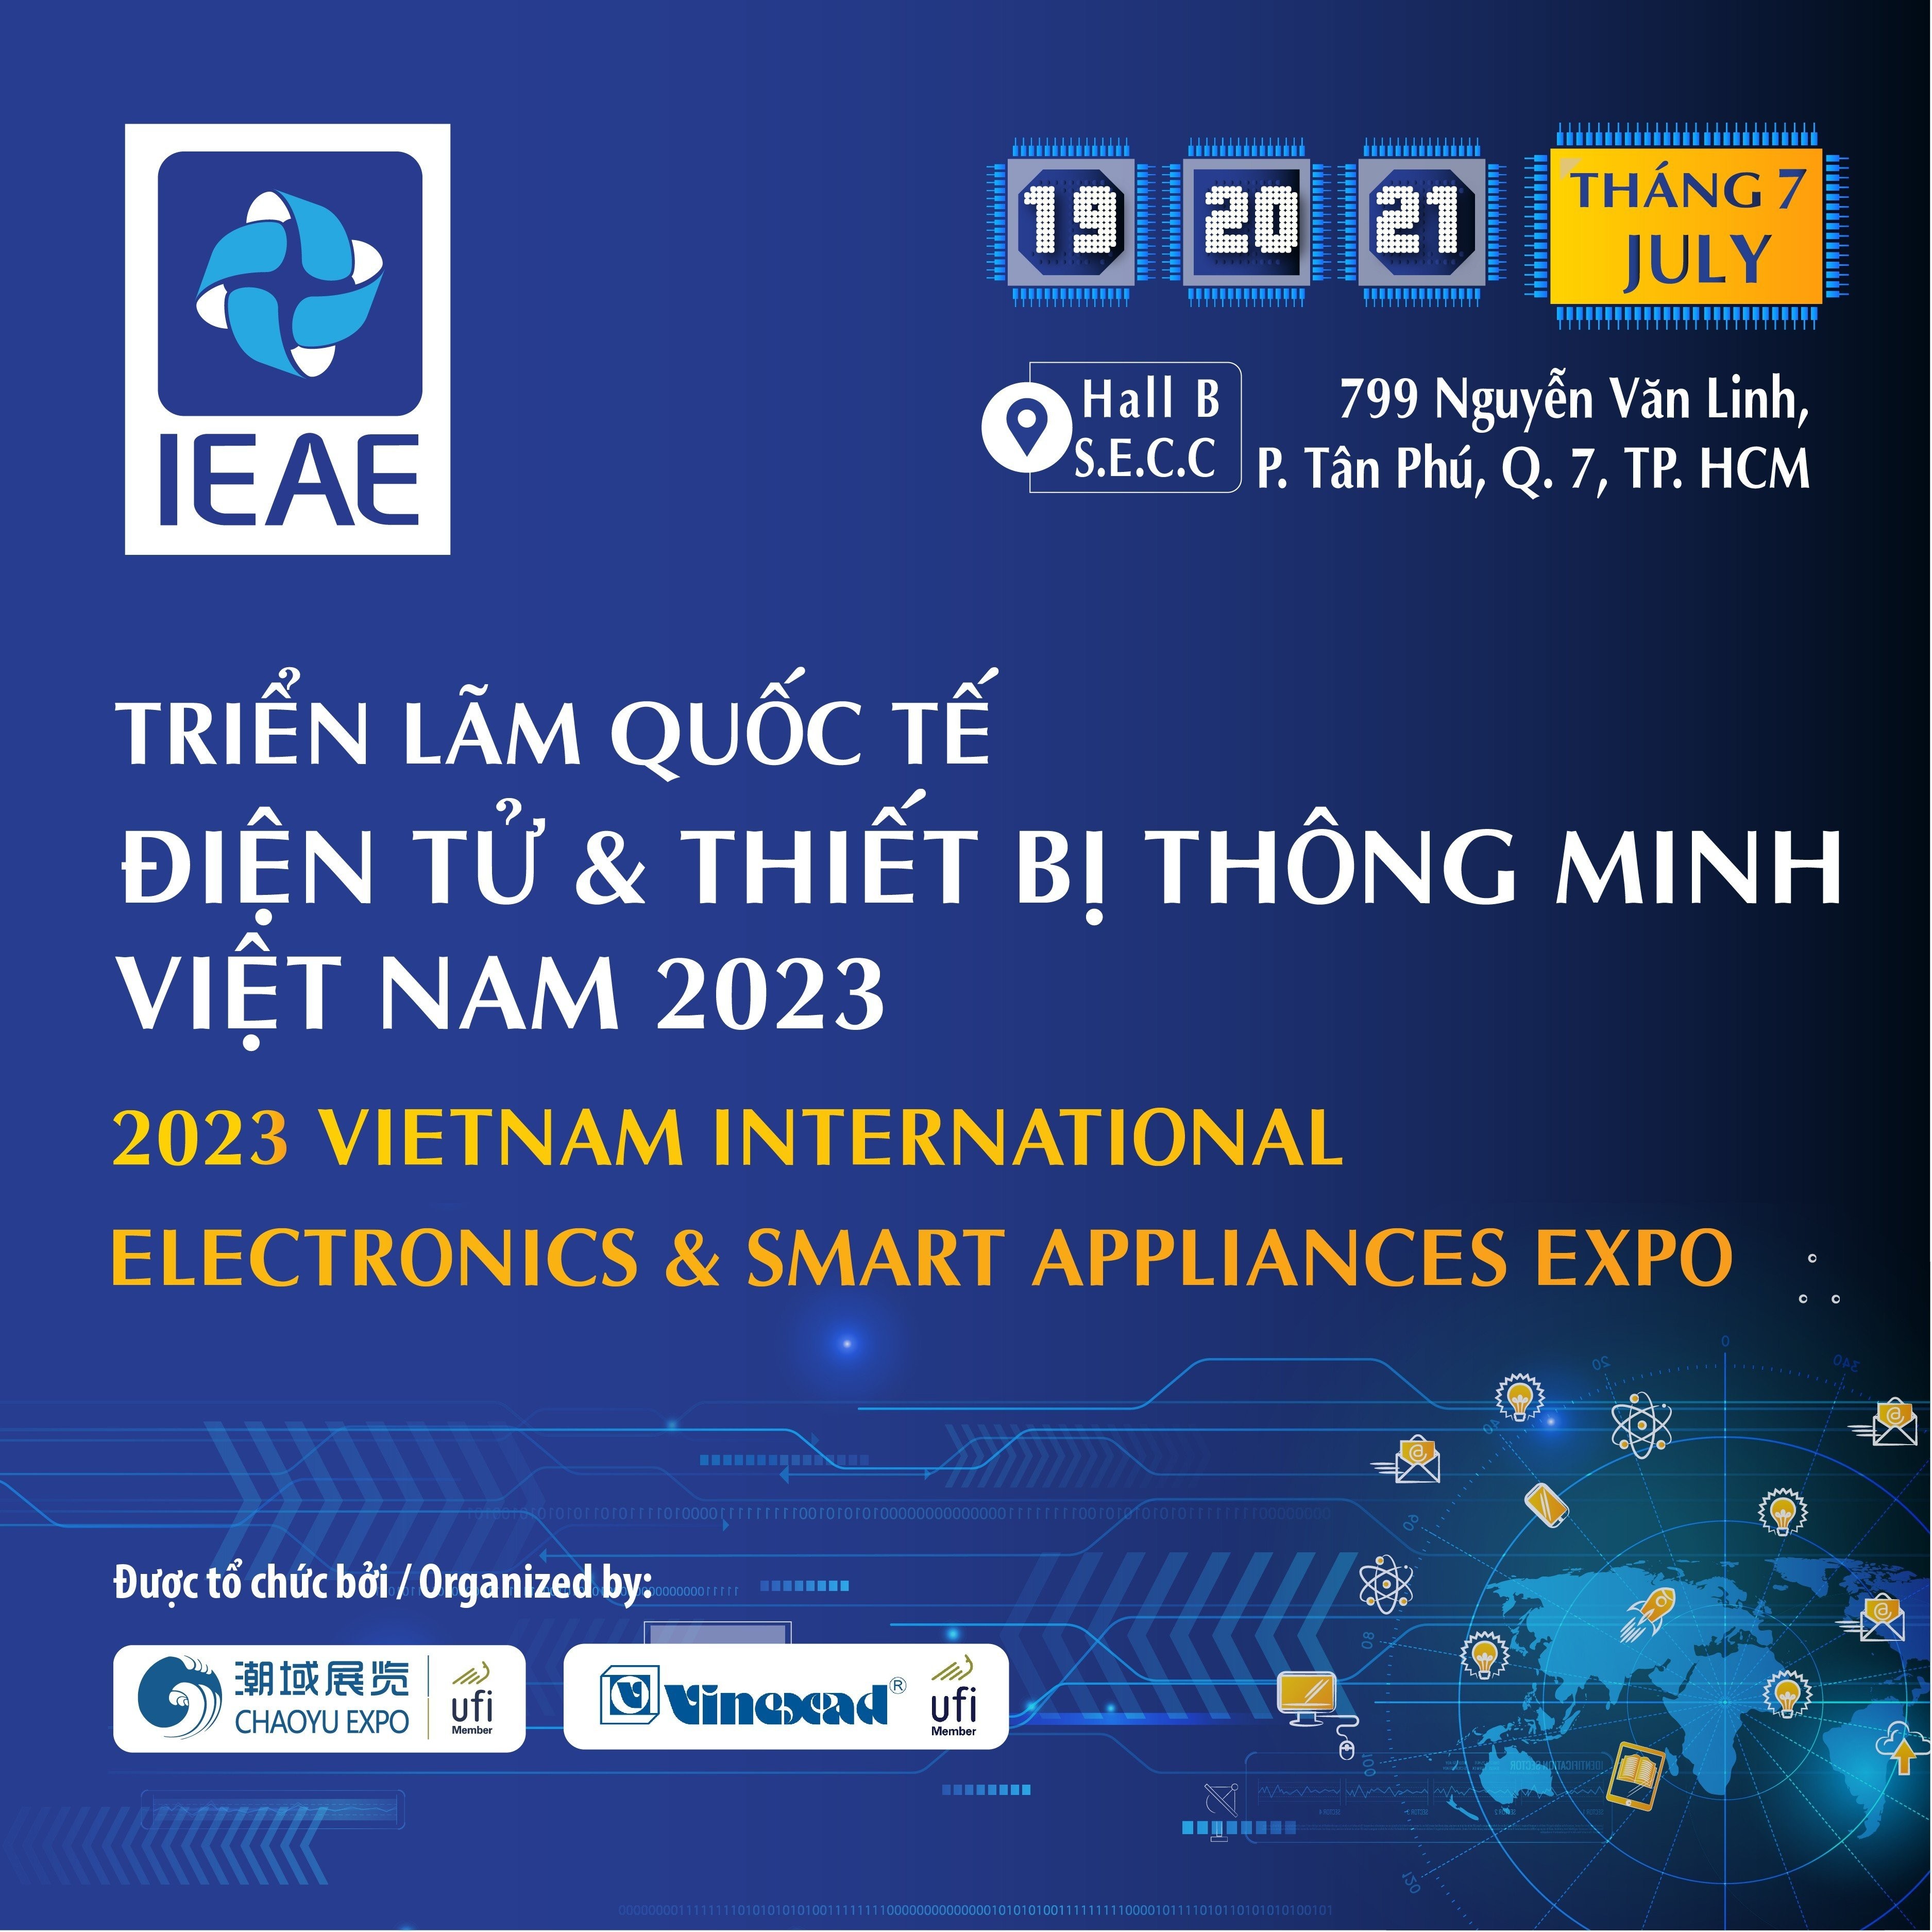 Triển lãm Quốc tế Điện tử & Thiết bị Thông minh (IEAE 2023) từ ngày 19 đến 21/07/2023 tại SECC